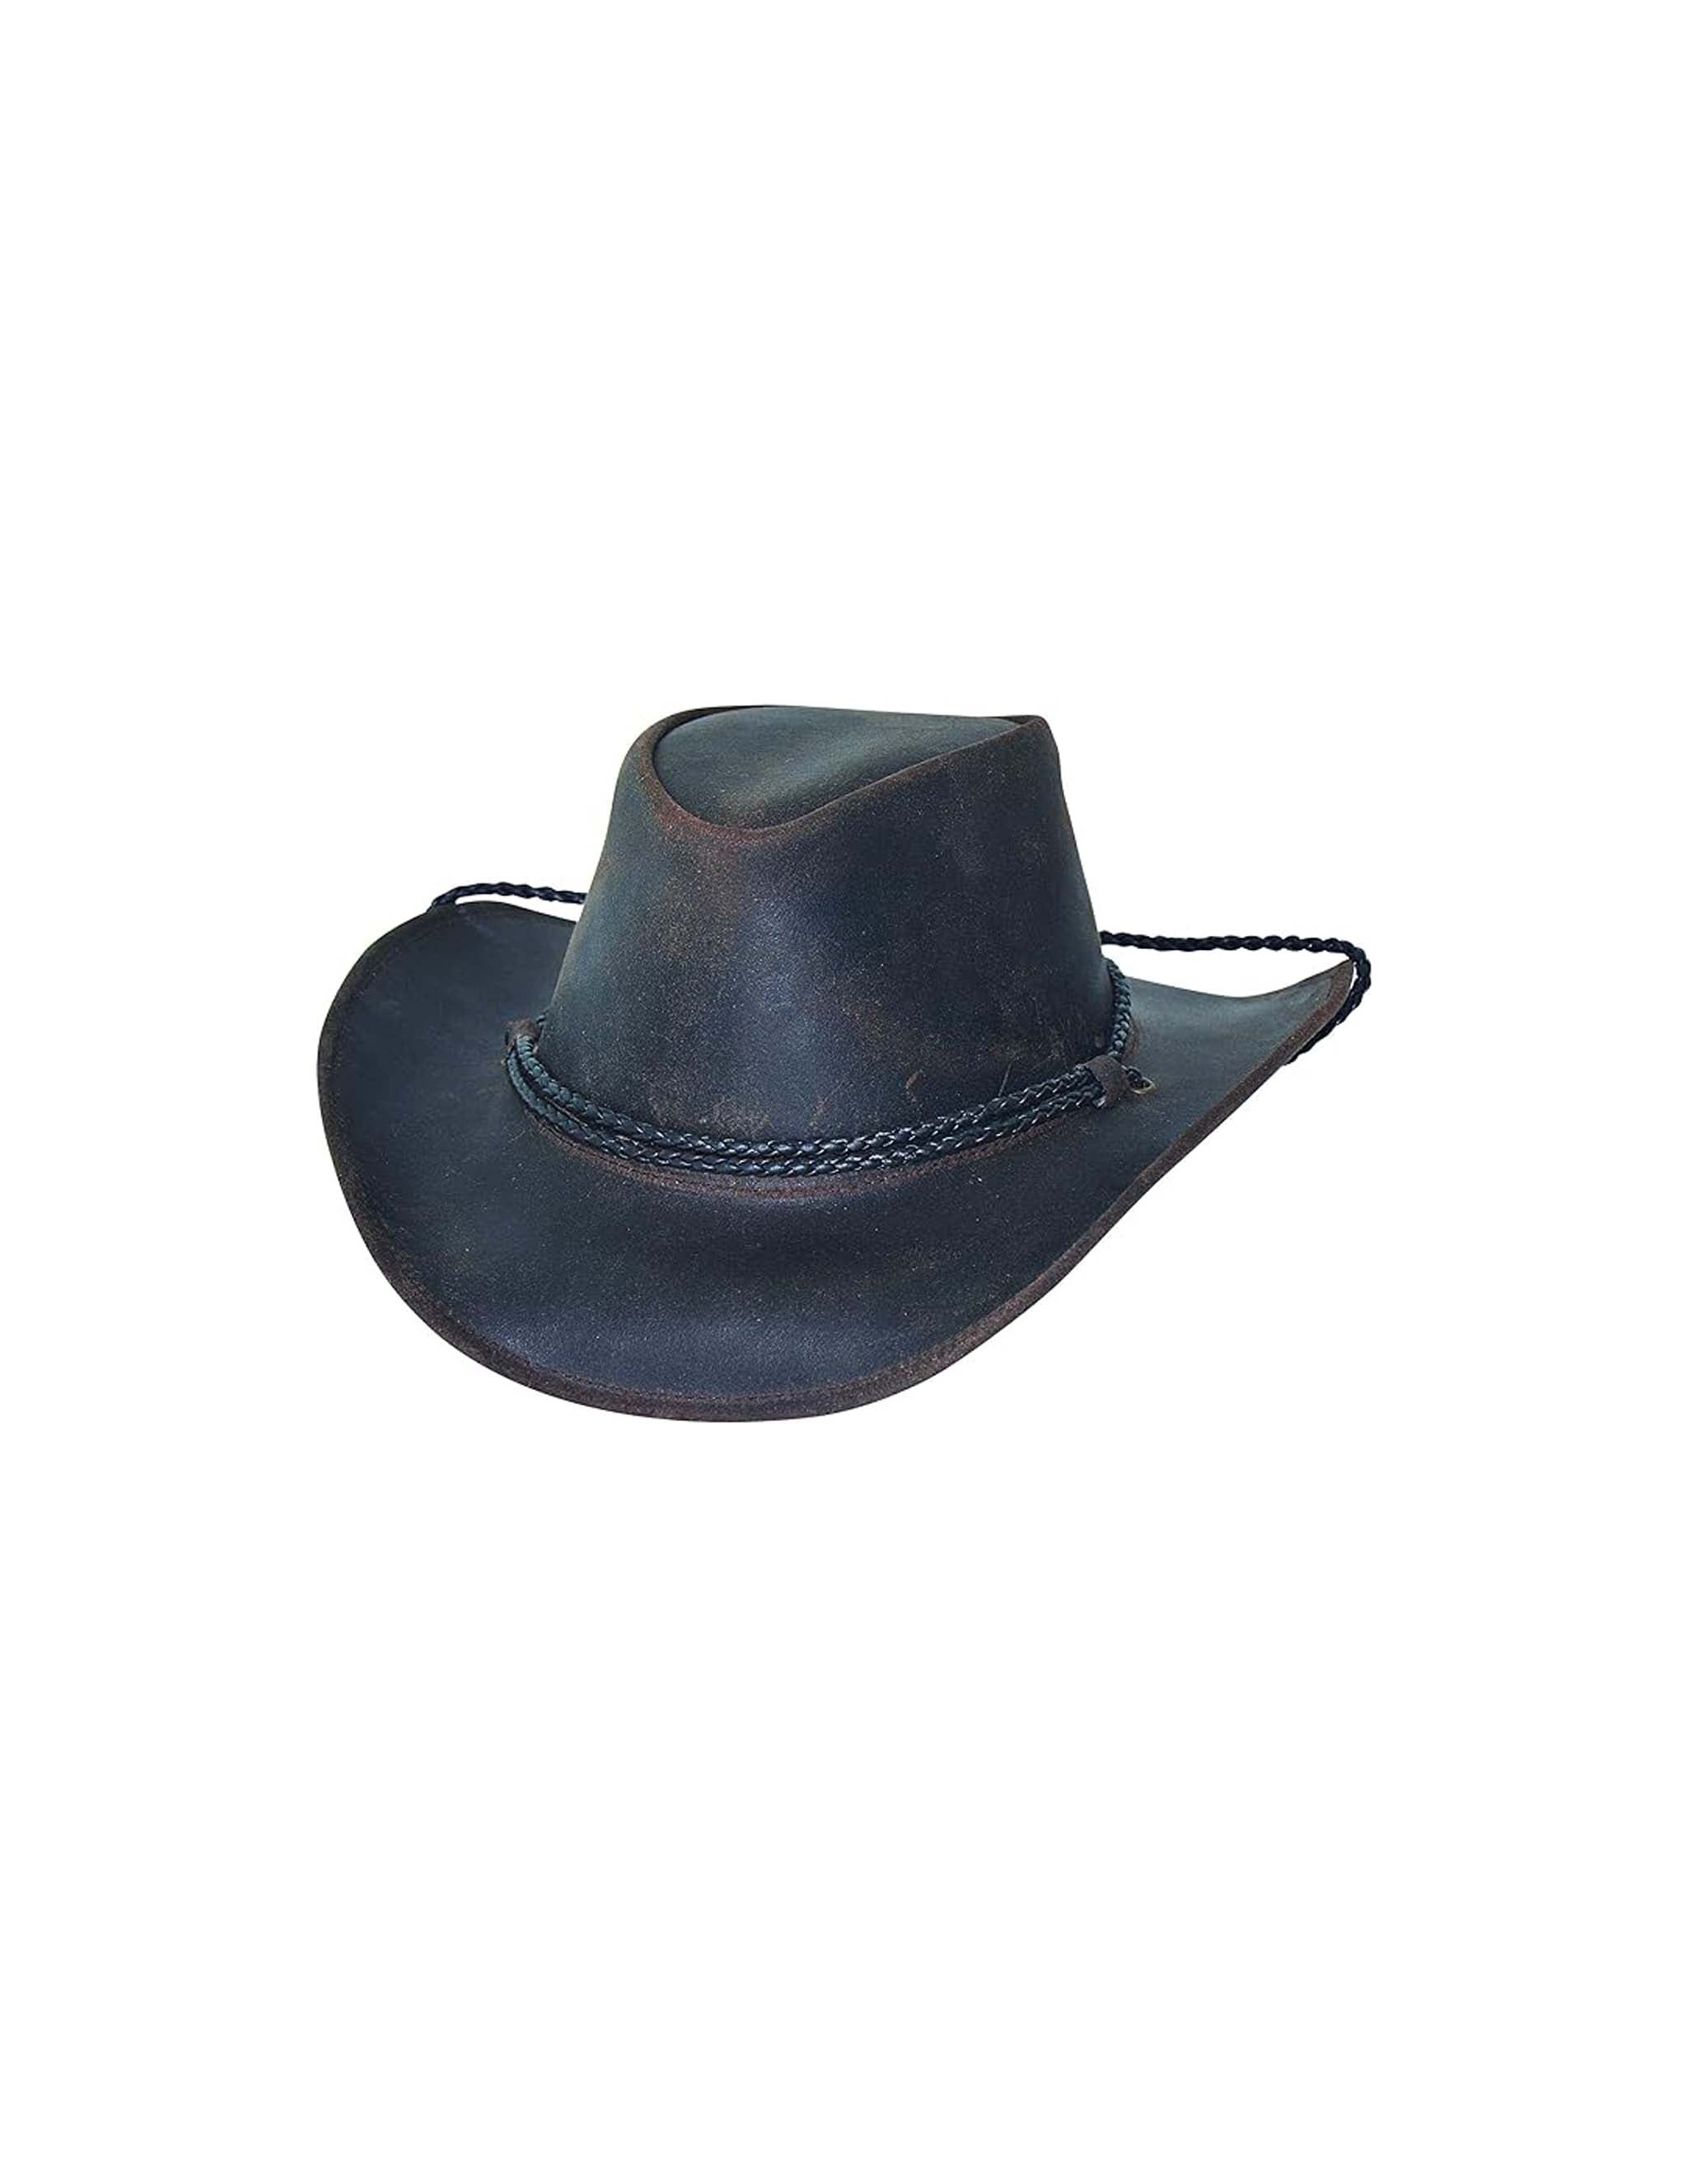 Hilltop Leather Cowboy Hat